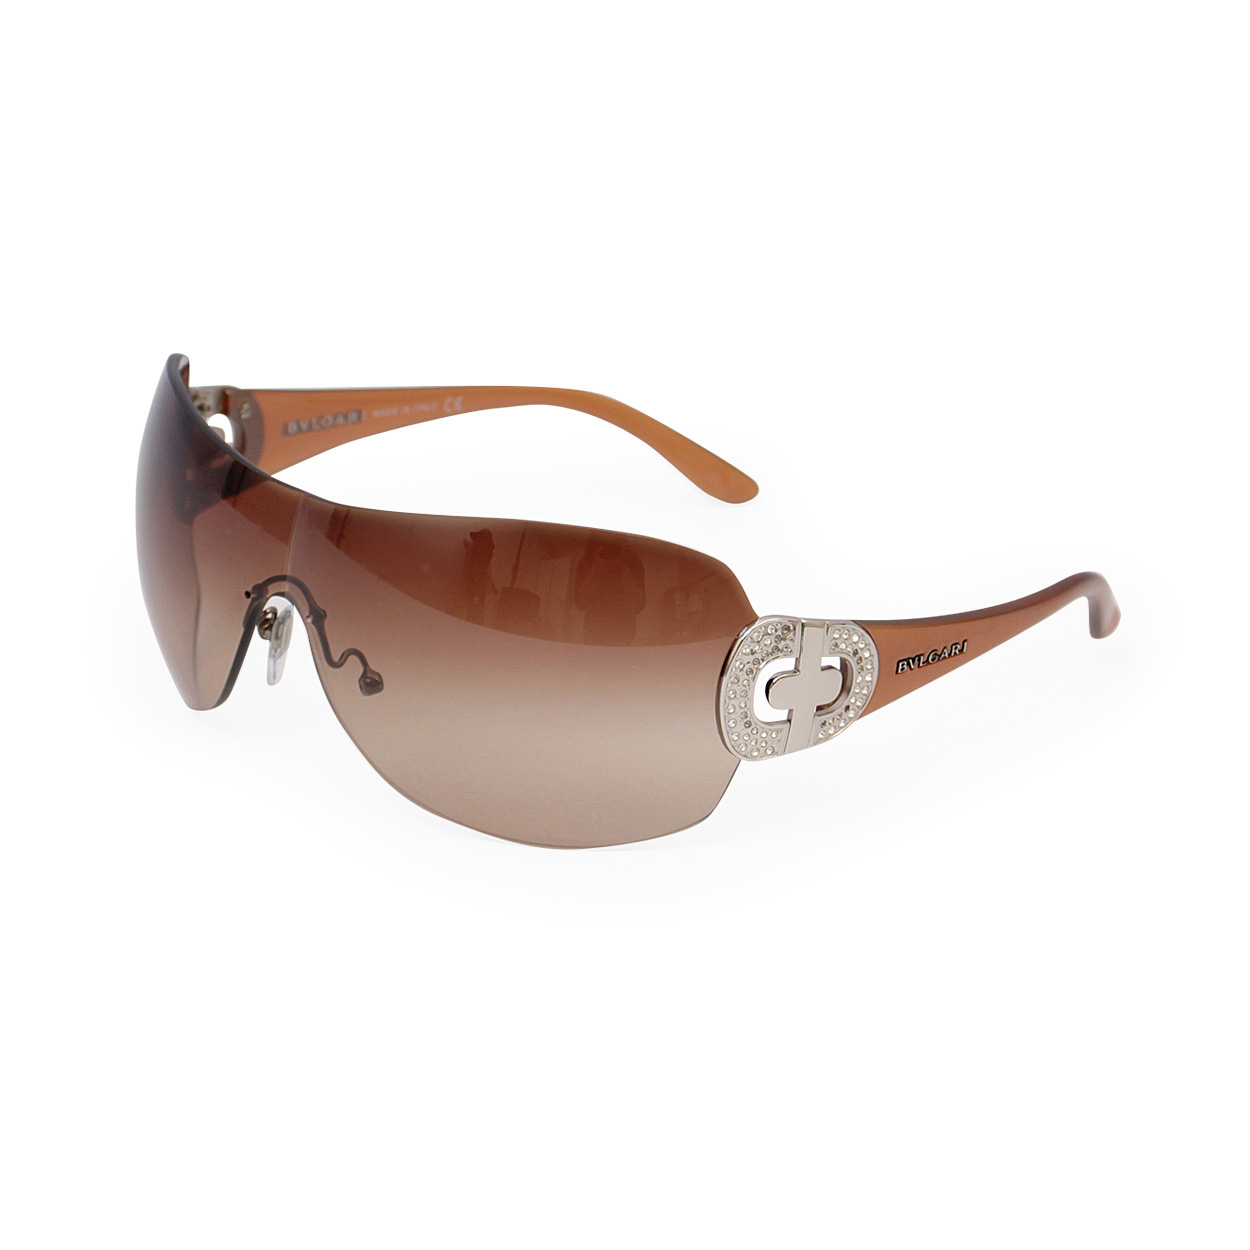 BVLGARI Sunglasses 6007 B Brown | Luxity